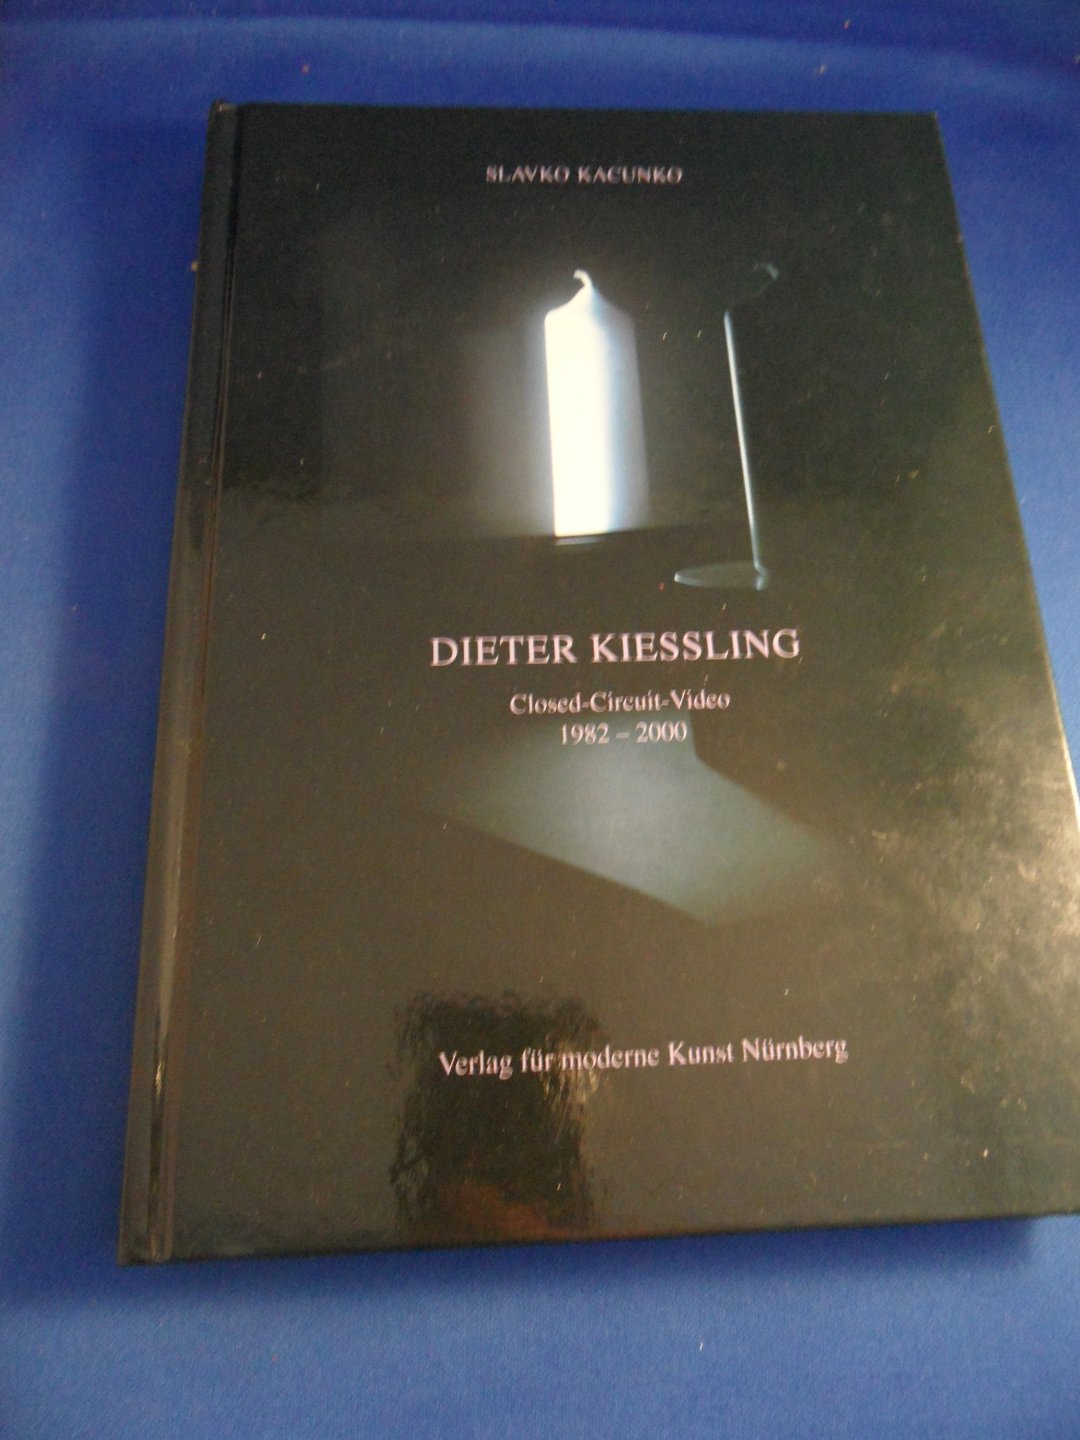 Kacunko, Slavko - Dieter Kiessling. Closed Circuit Video. 1982 - 2000